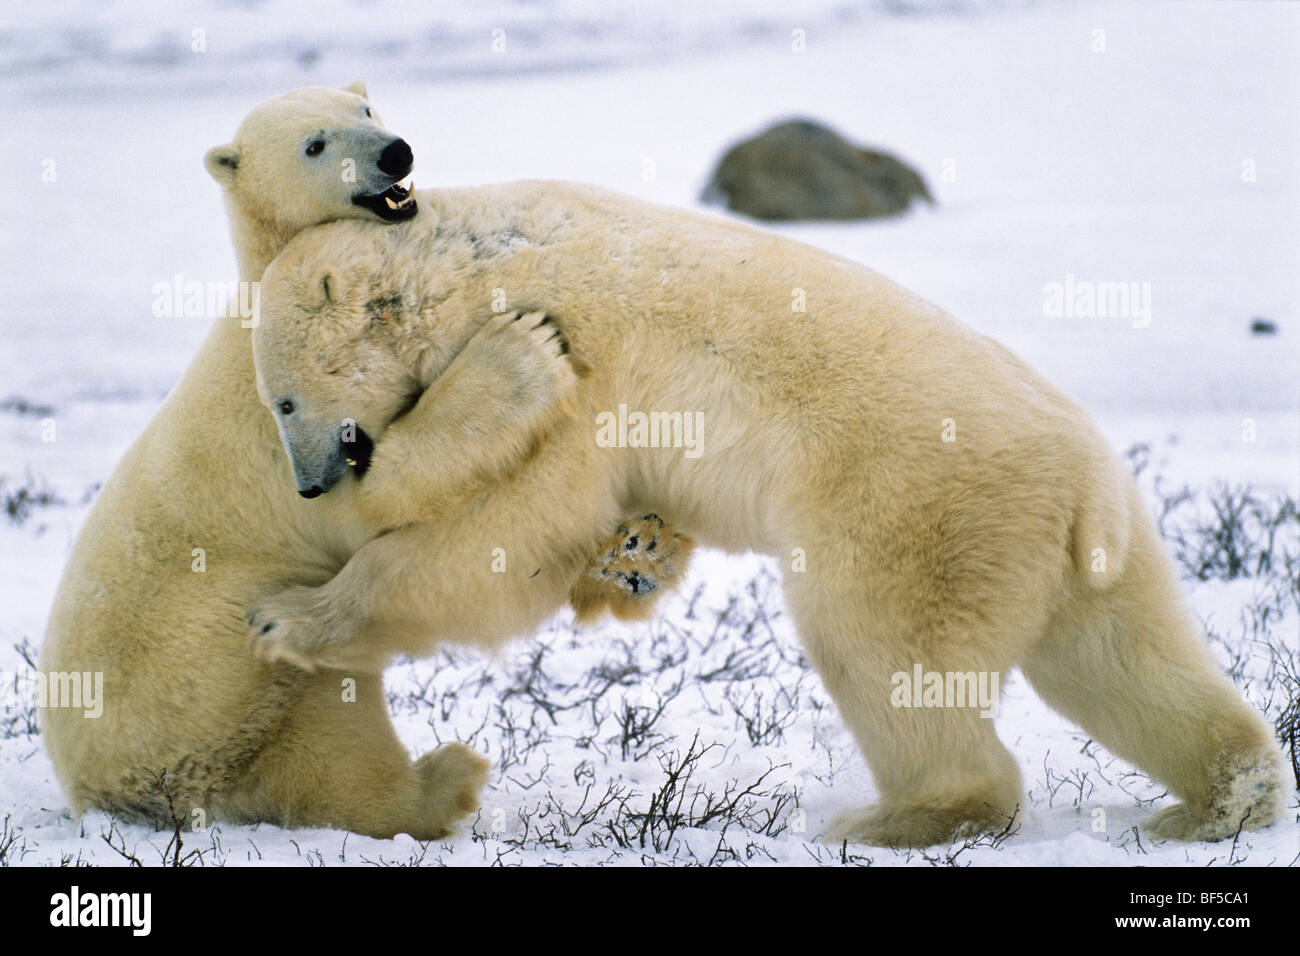 L'ours polaire (Ursus maritimus) de jouer, s'étreindre, Churchill, Canada Banque D'Images